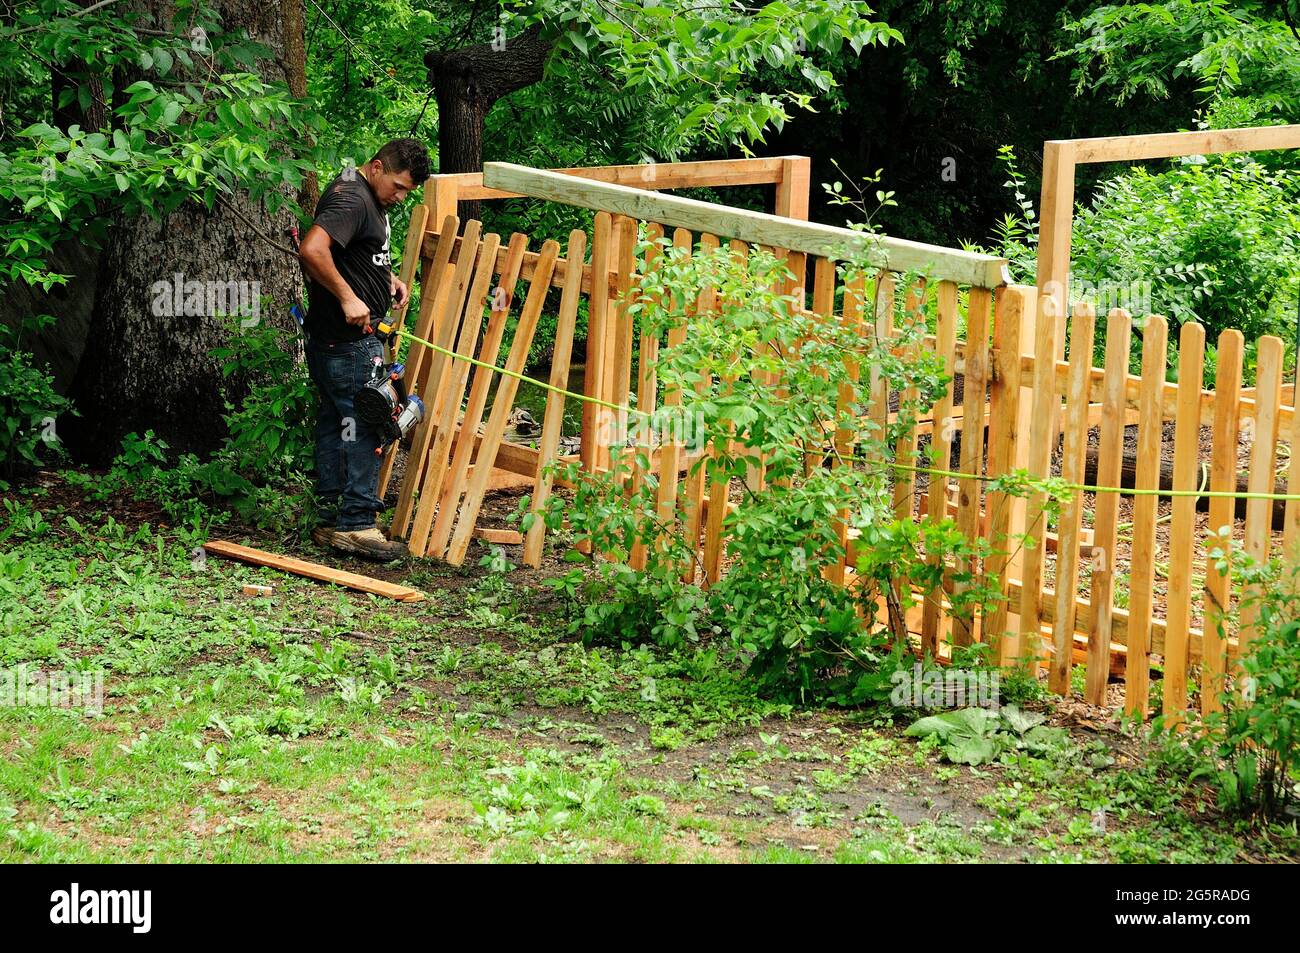 Worker installing back yard dog fence. Stock Photo